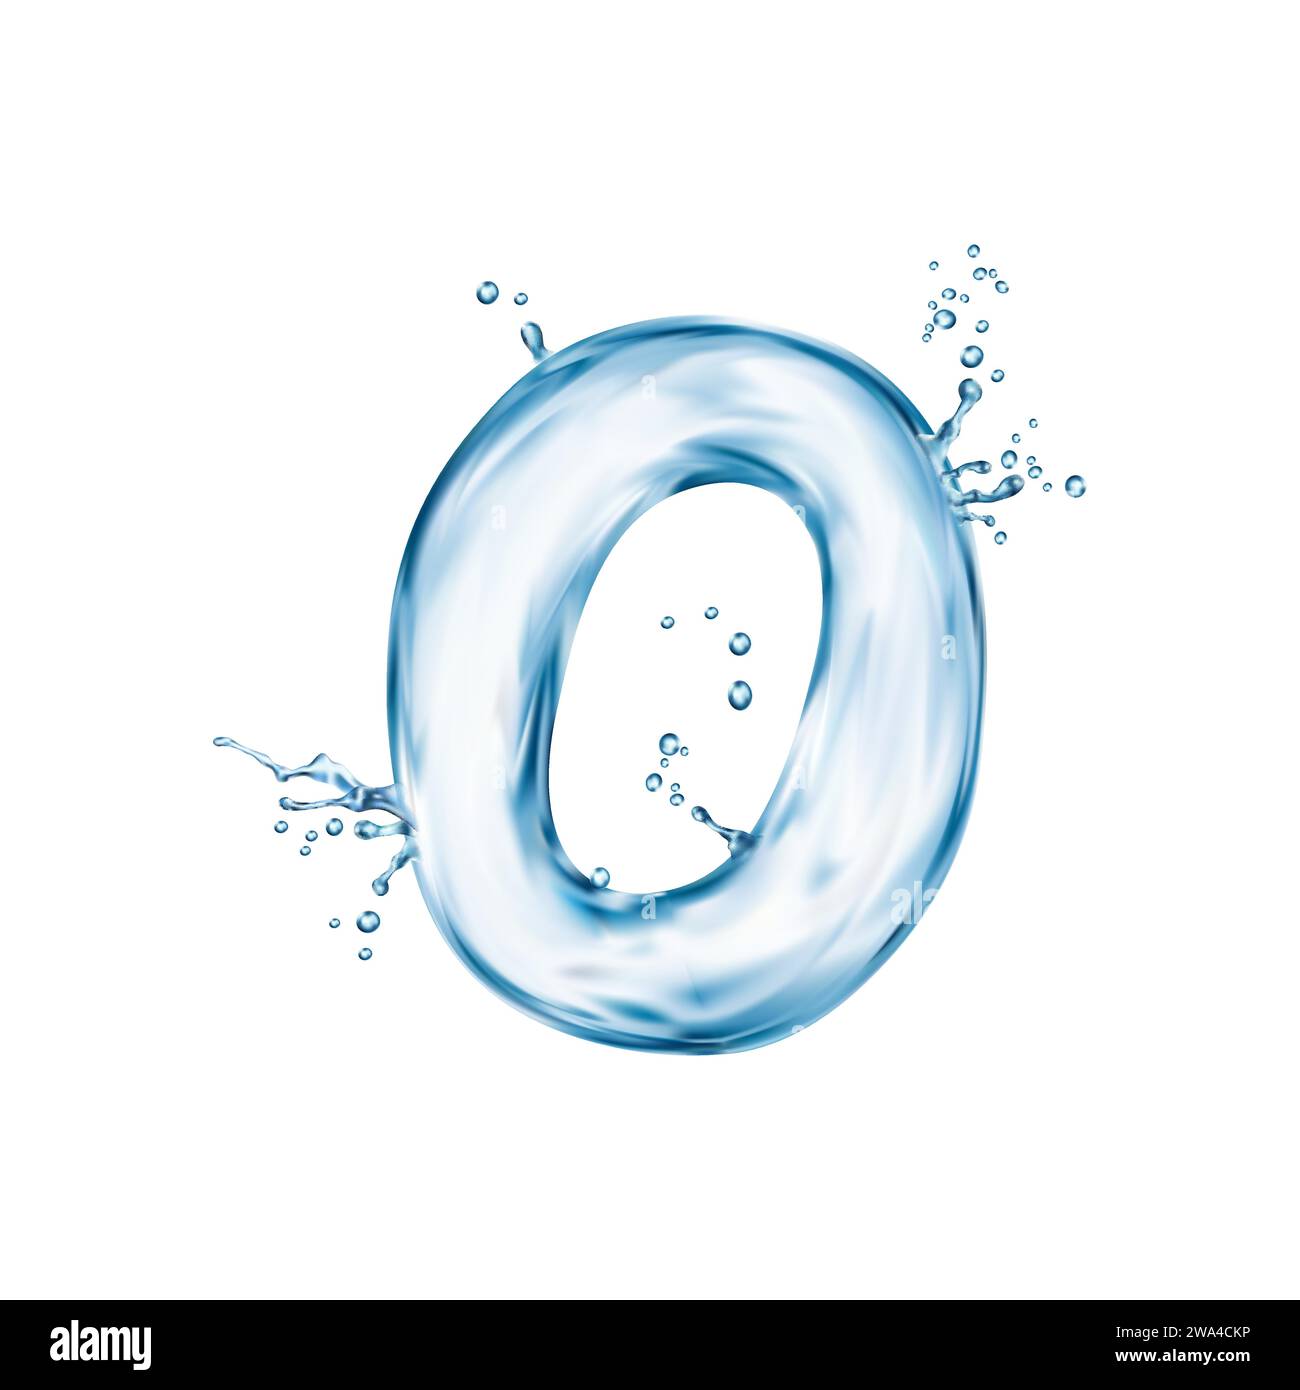 Realistische Wasserschrift, Buchstabe O Flow Splash, flüssiges Aqua Schriftbild, transparentes nasses englisches Alphabet. Isolierter Vektor-abc-Charakter erscheint wie eine klare, flüssige Pooloberfläche schimmert mit Wellen Stock Vektor